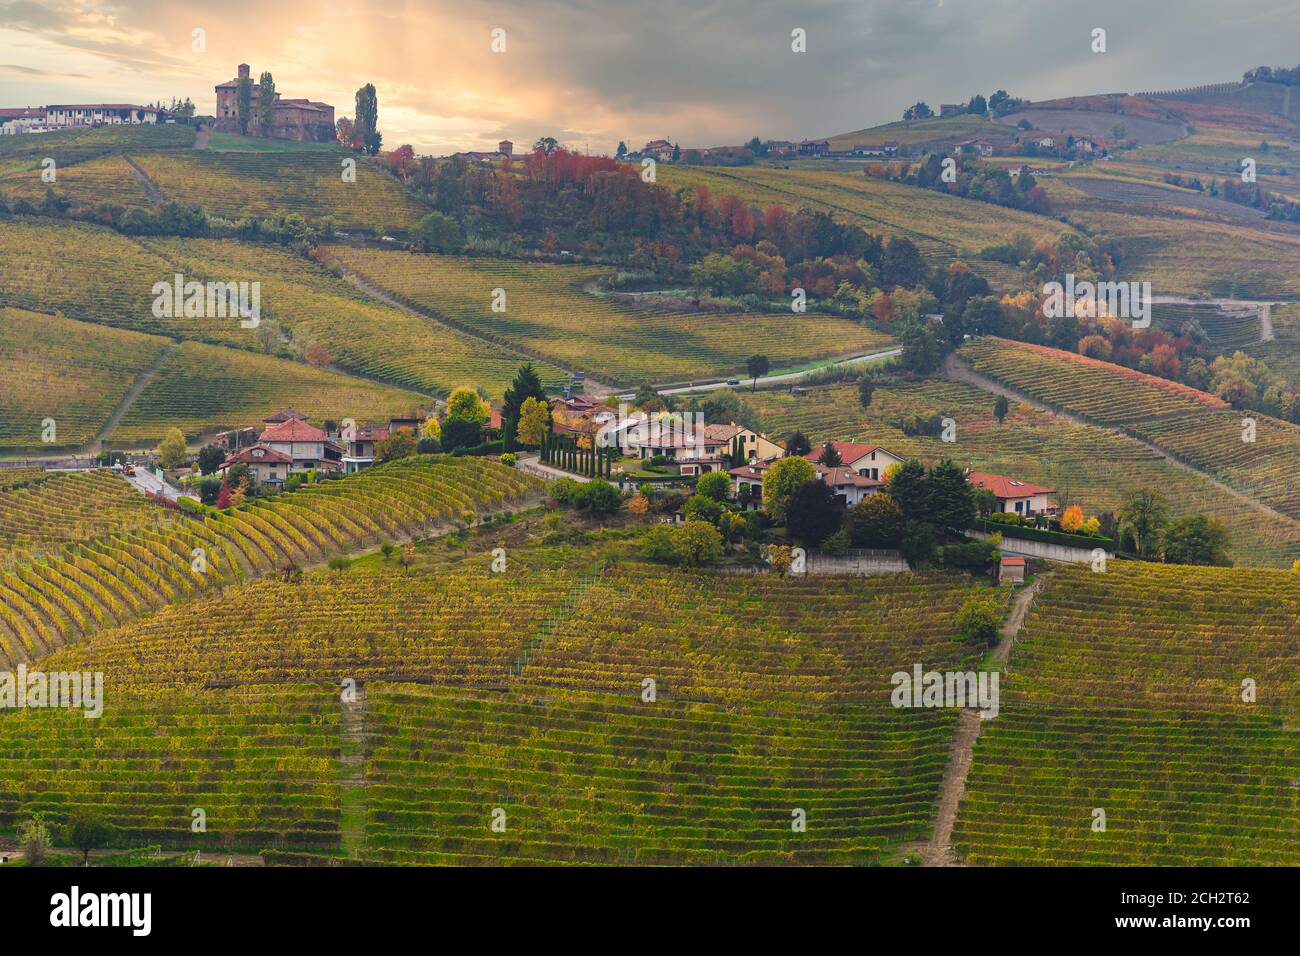 Vista elevata sulle colline dei vigneti delle Langhe al tramonto in autunno, Patrimonio dell'Umanità dell'UNESCO, Alba, provincia di Cuneo, Piemonte, Italia Foto Stock